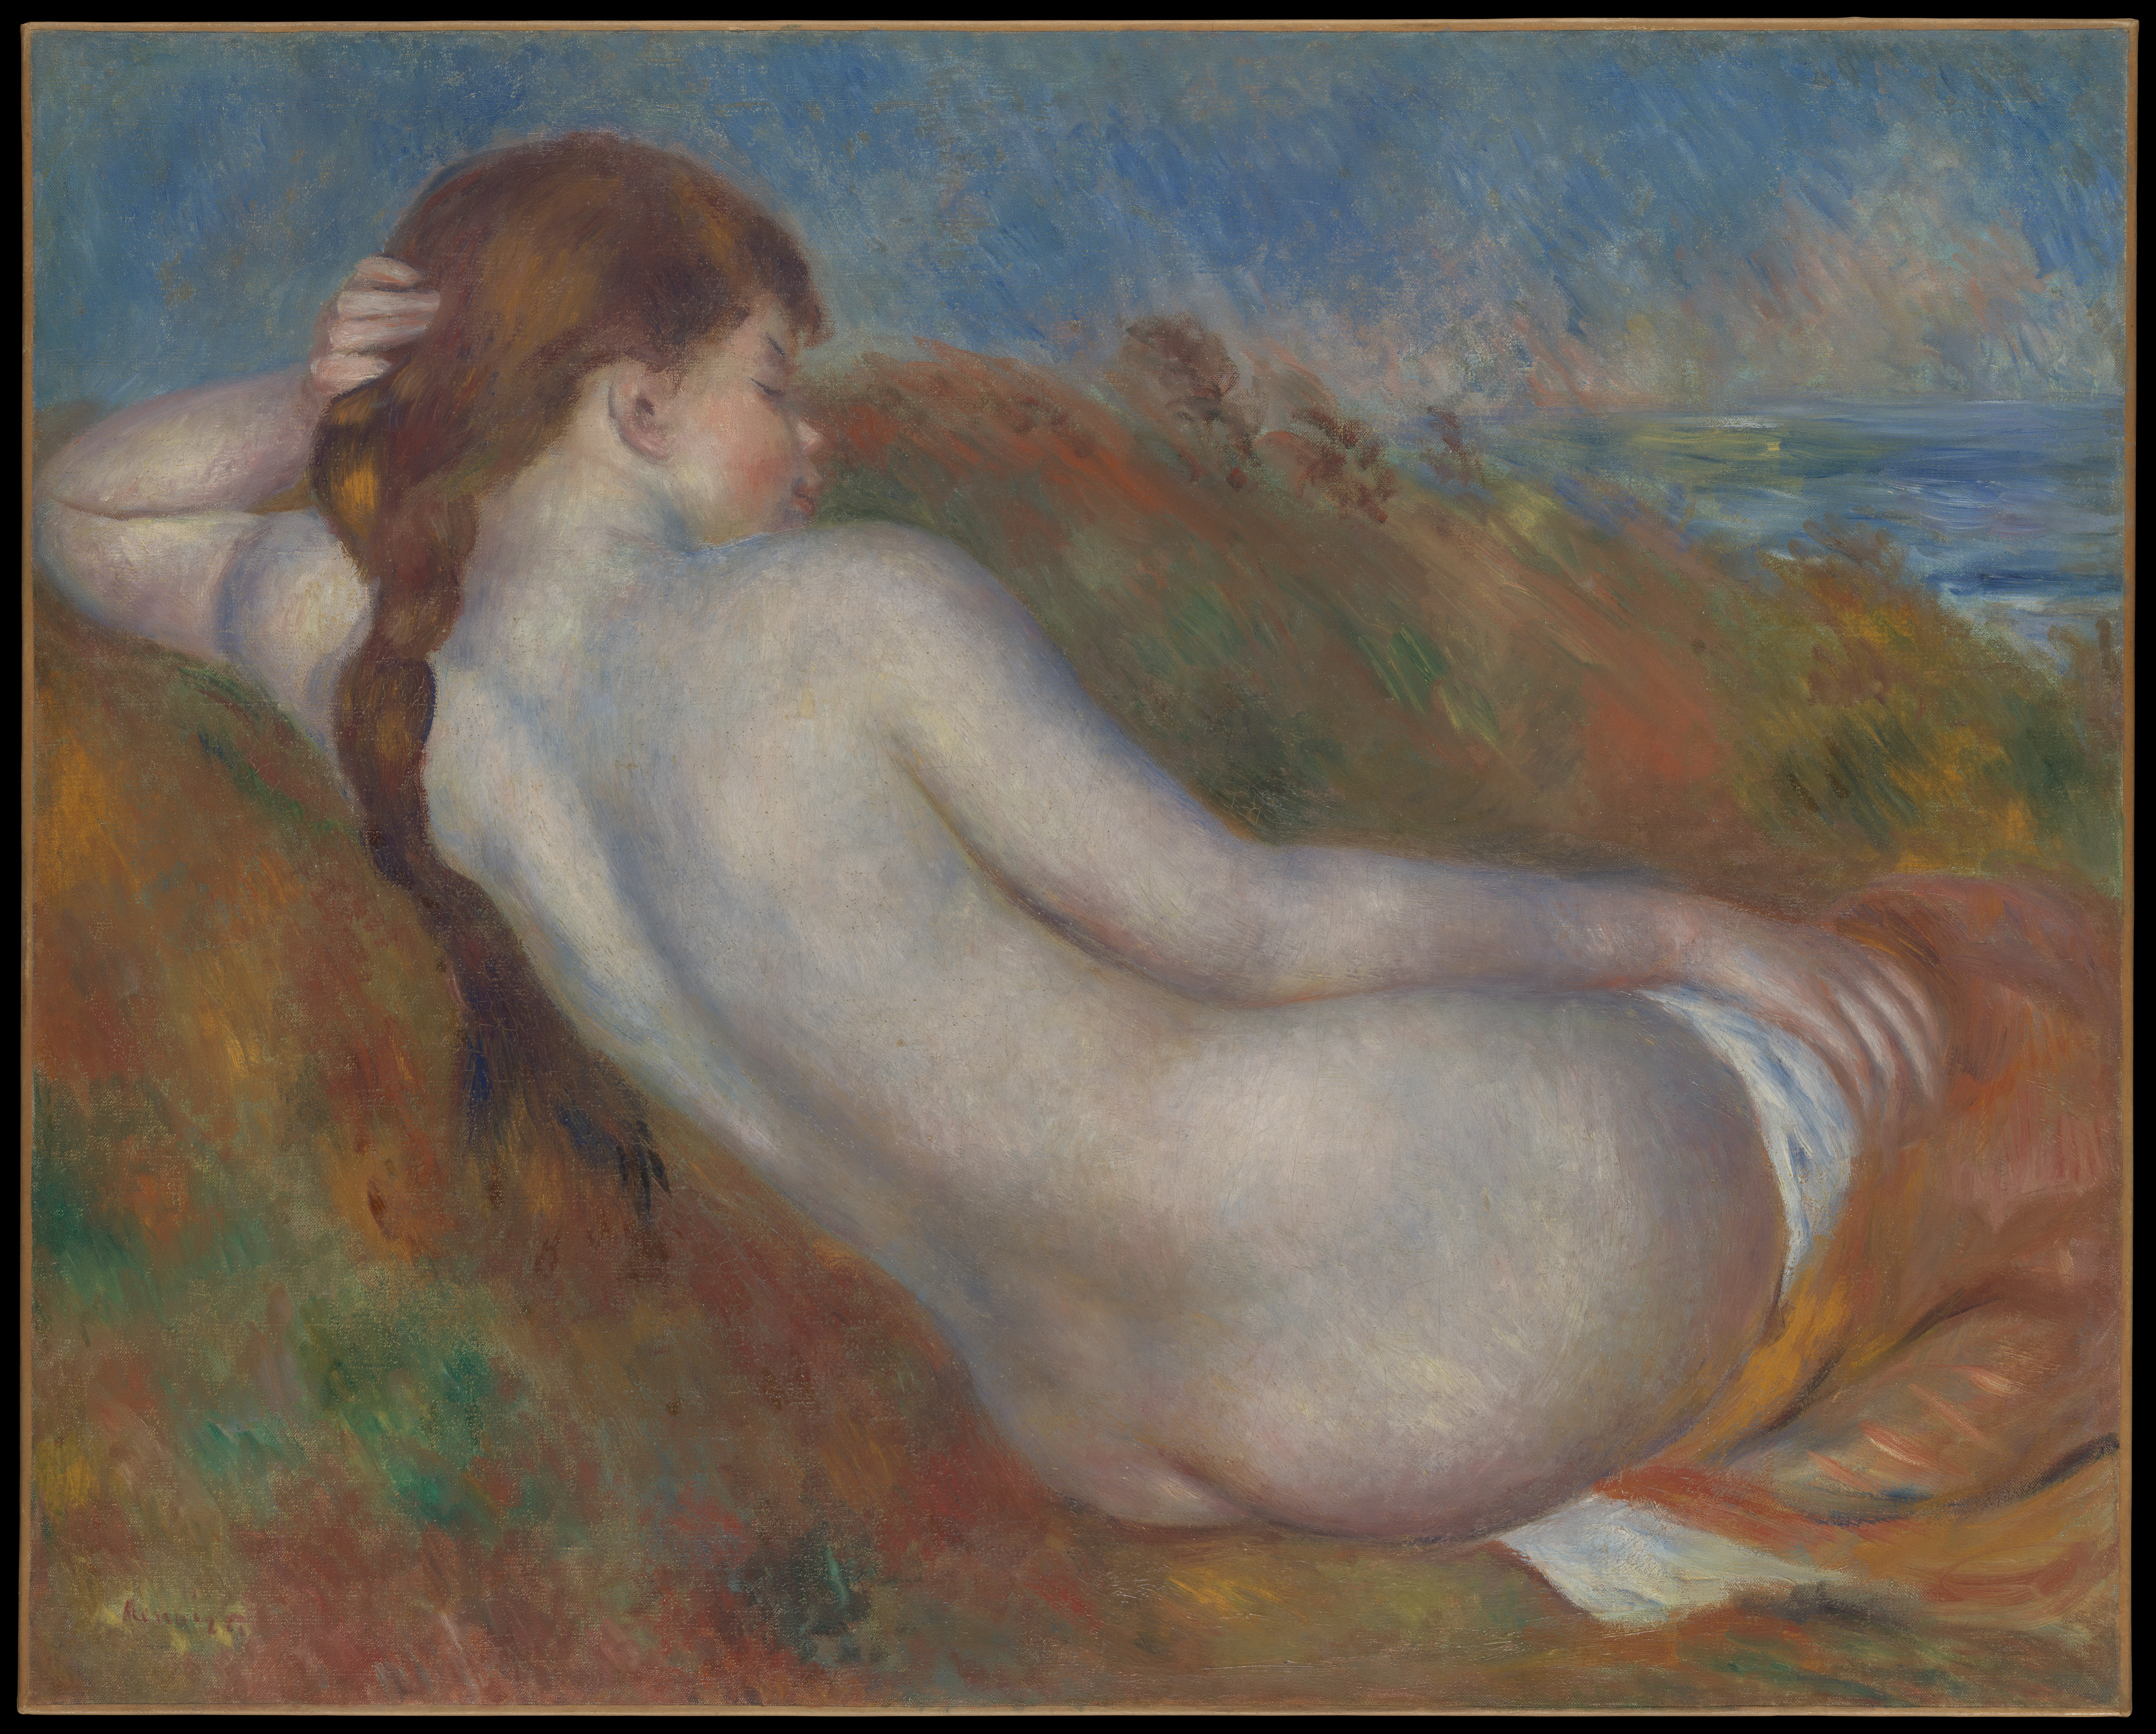 Лежећи акт by Pierre-Auguste Renoir - 1883. - 65.1 x 81.3 cm 